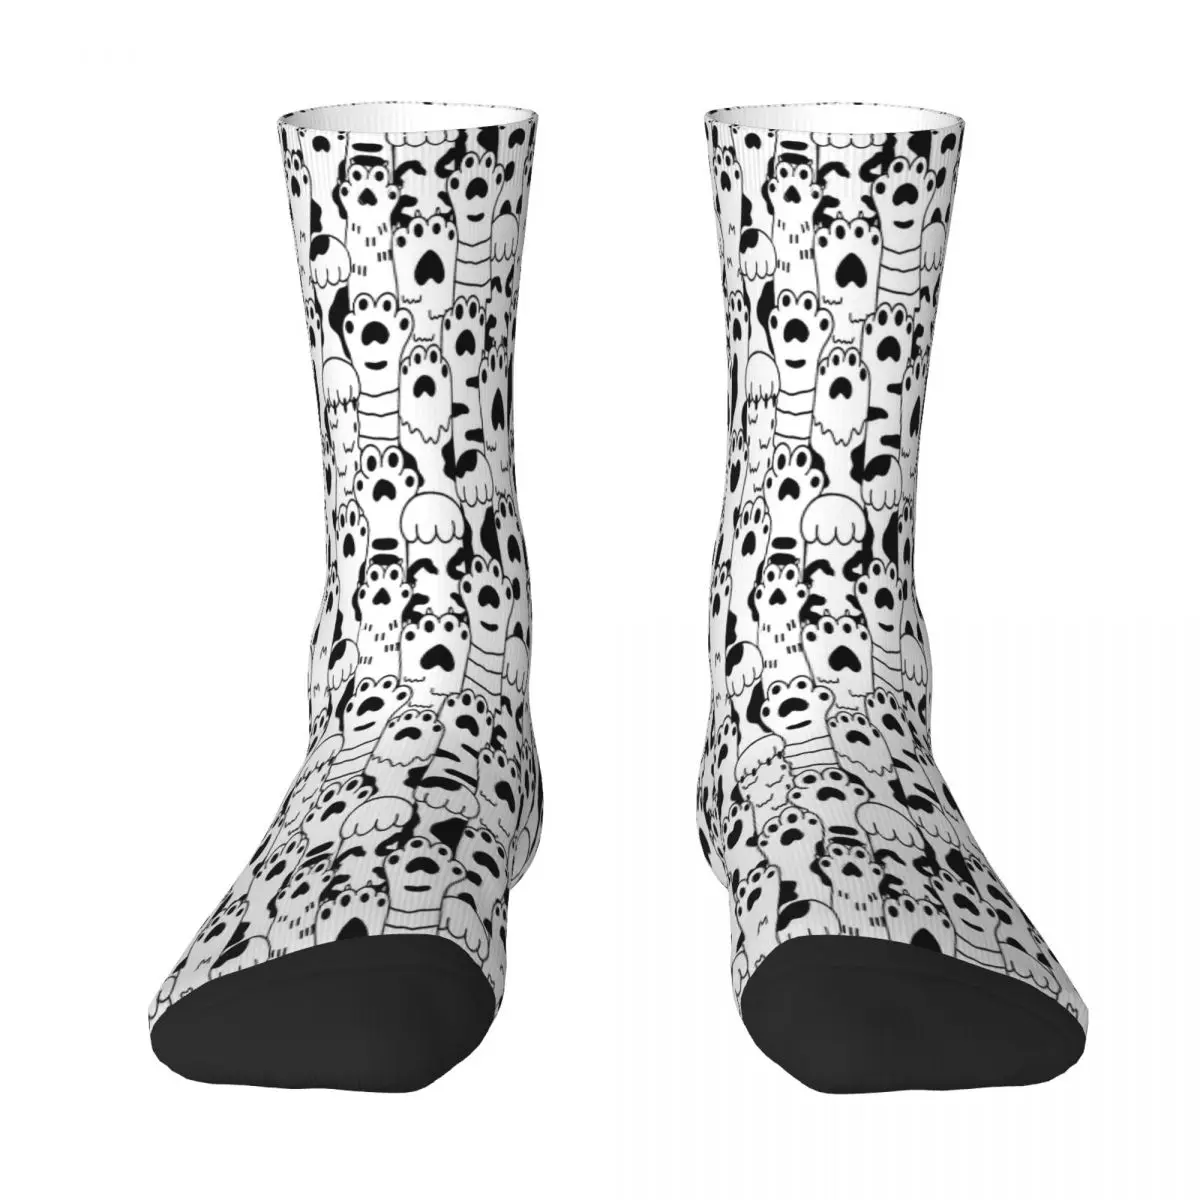 

Носки с рисунком кошачьих лап, мужские и женские чулки из полиэстера, индивидуальный дизайн